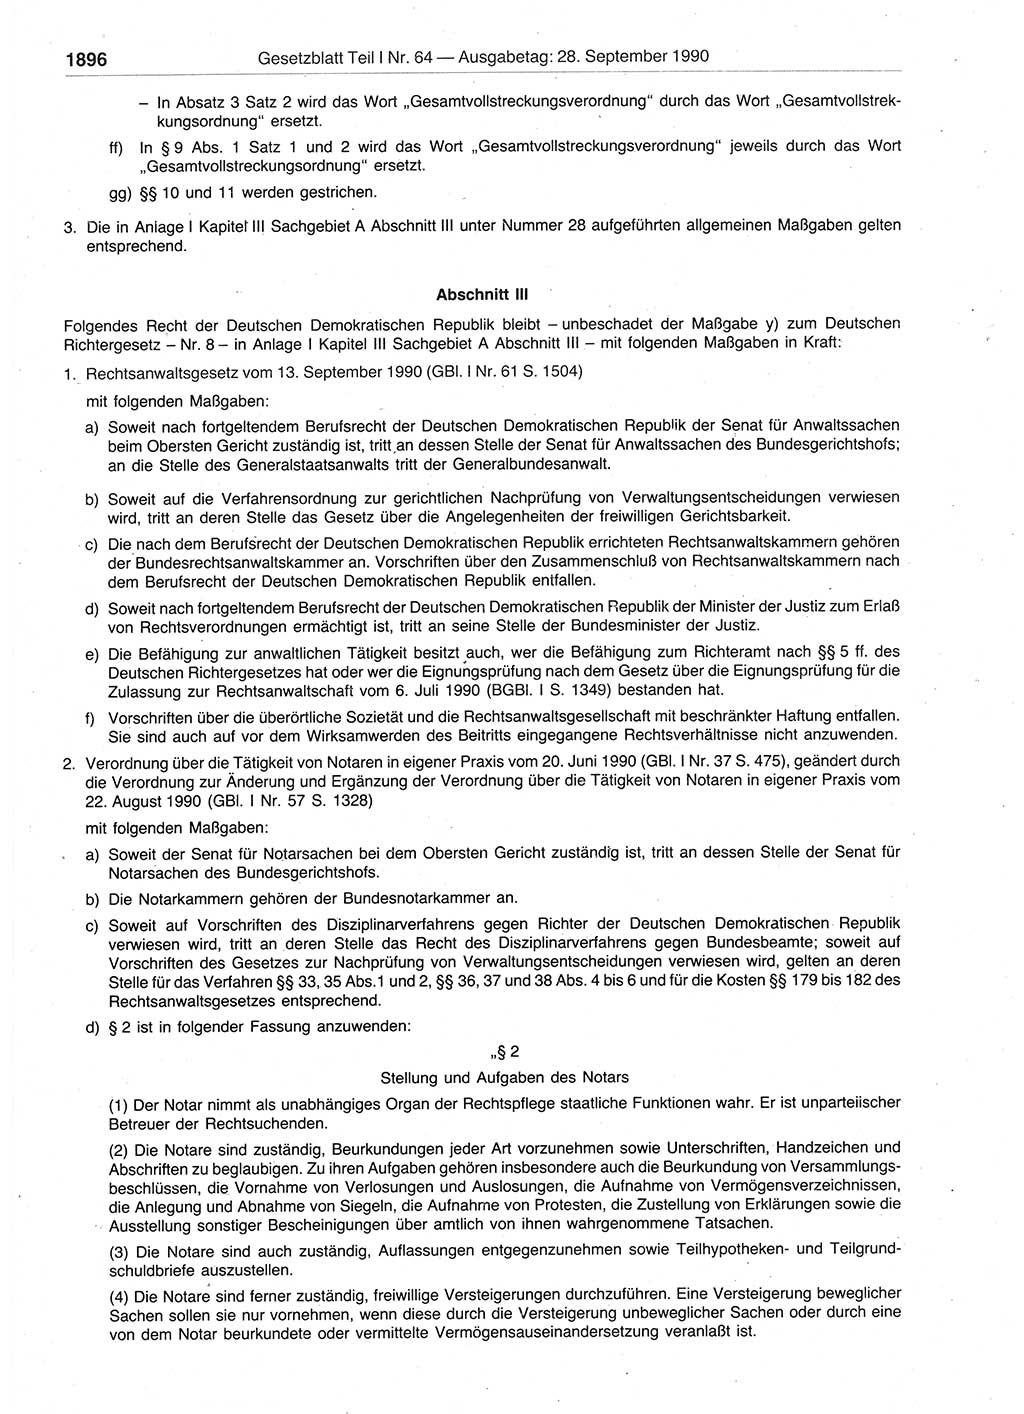 Gesetzblatt (GBl.) der Deutschen Demokratischen Republik (DDR) Teil Ⅰ 1990, Seite 1896 (GBl. DDR Ⅰ 1990, S. 1896)